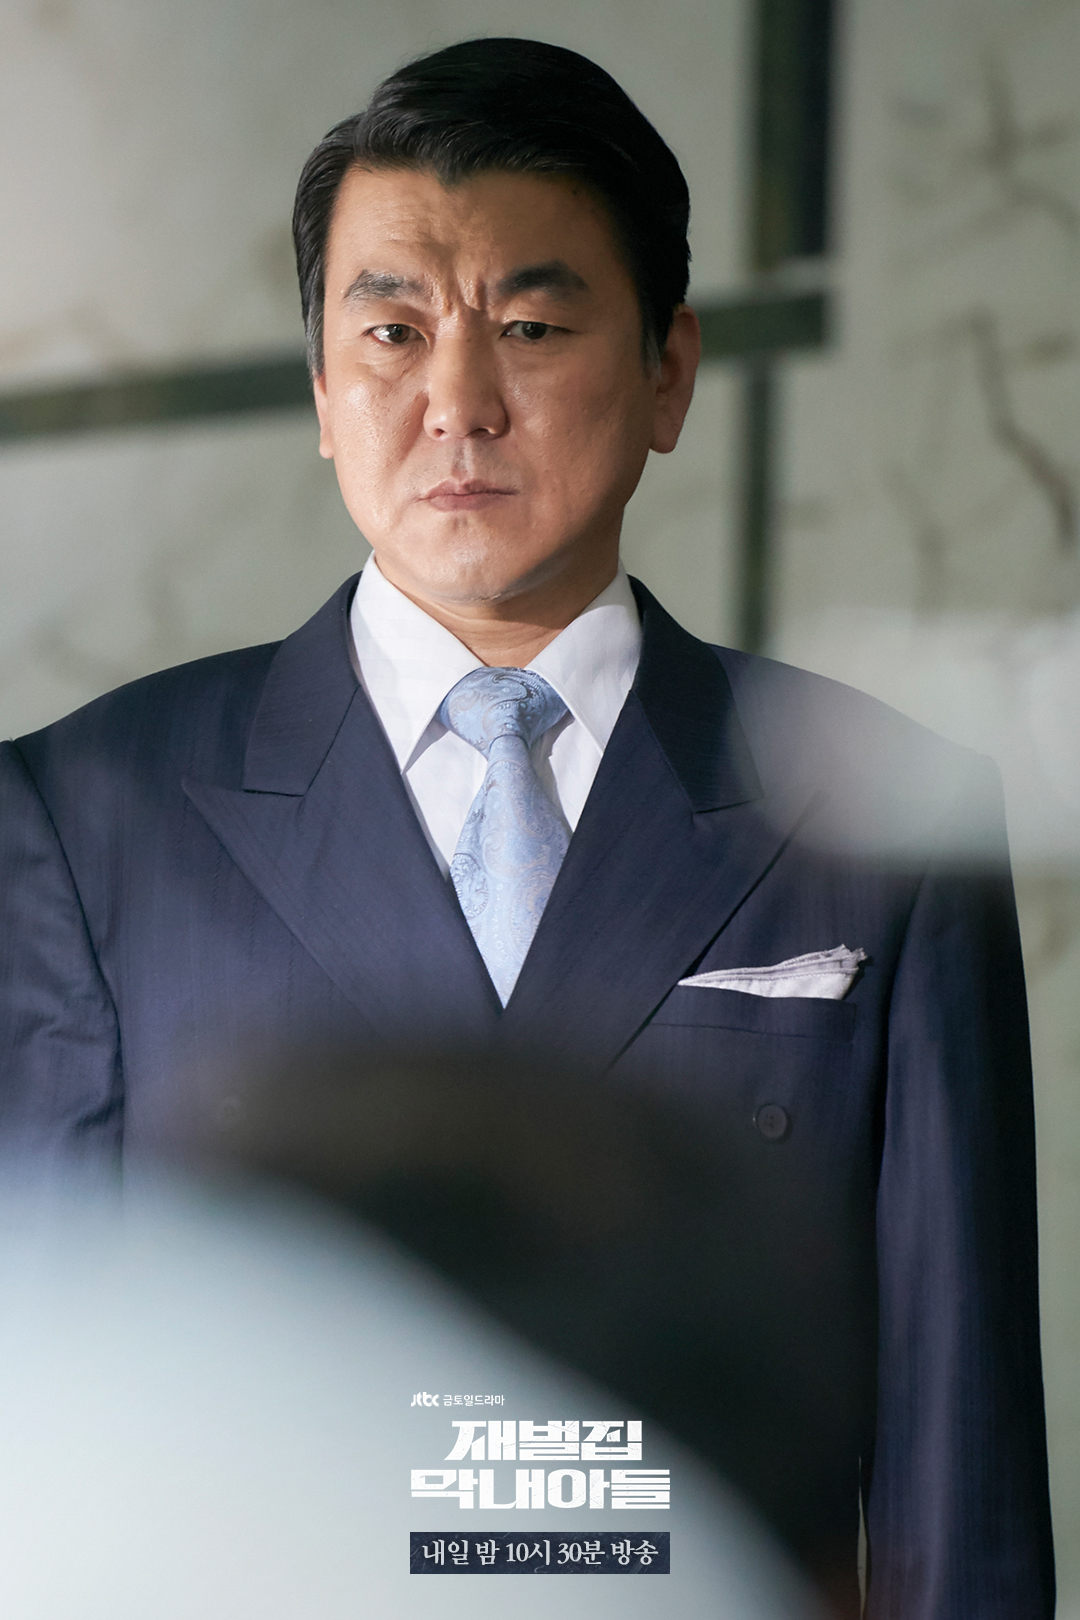 Đối thủ của Song Joong Ki trong Cậu Út Nhà Tài Phiệt: Tưởng ai xa lạ nào ngờ toàn người ở sát cạnh bên - Ảnh 3.